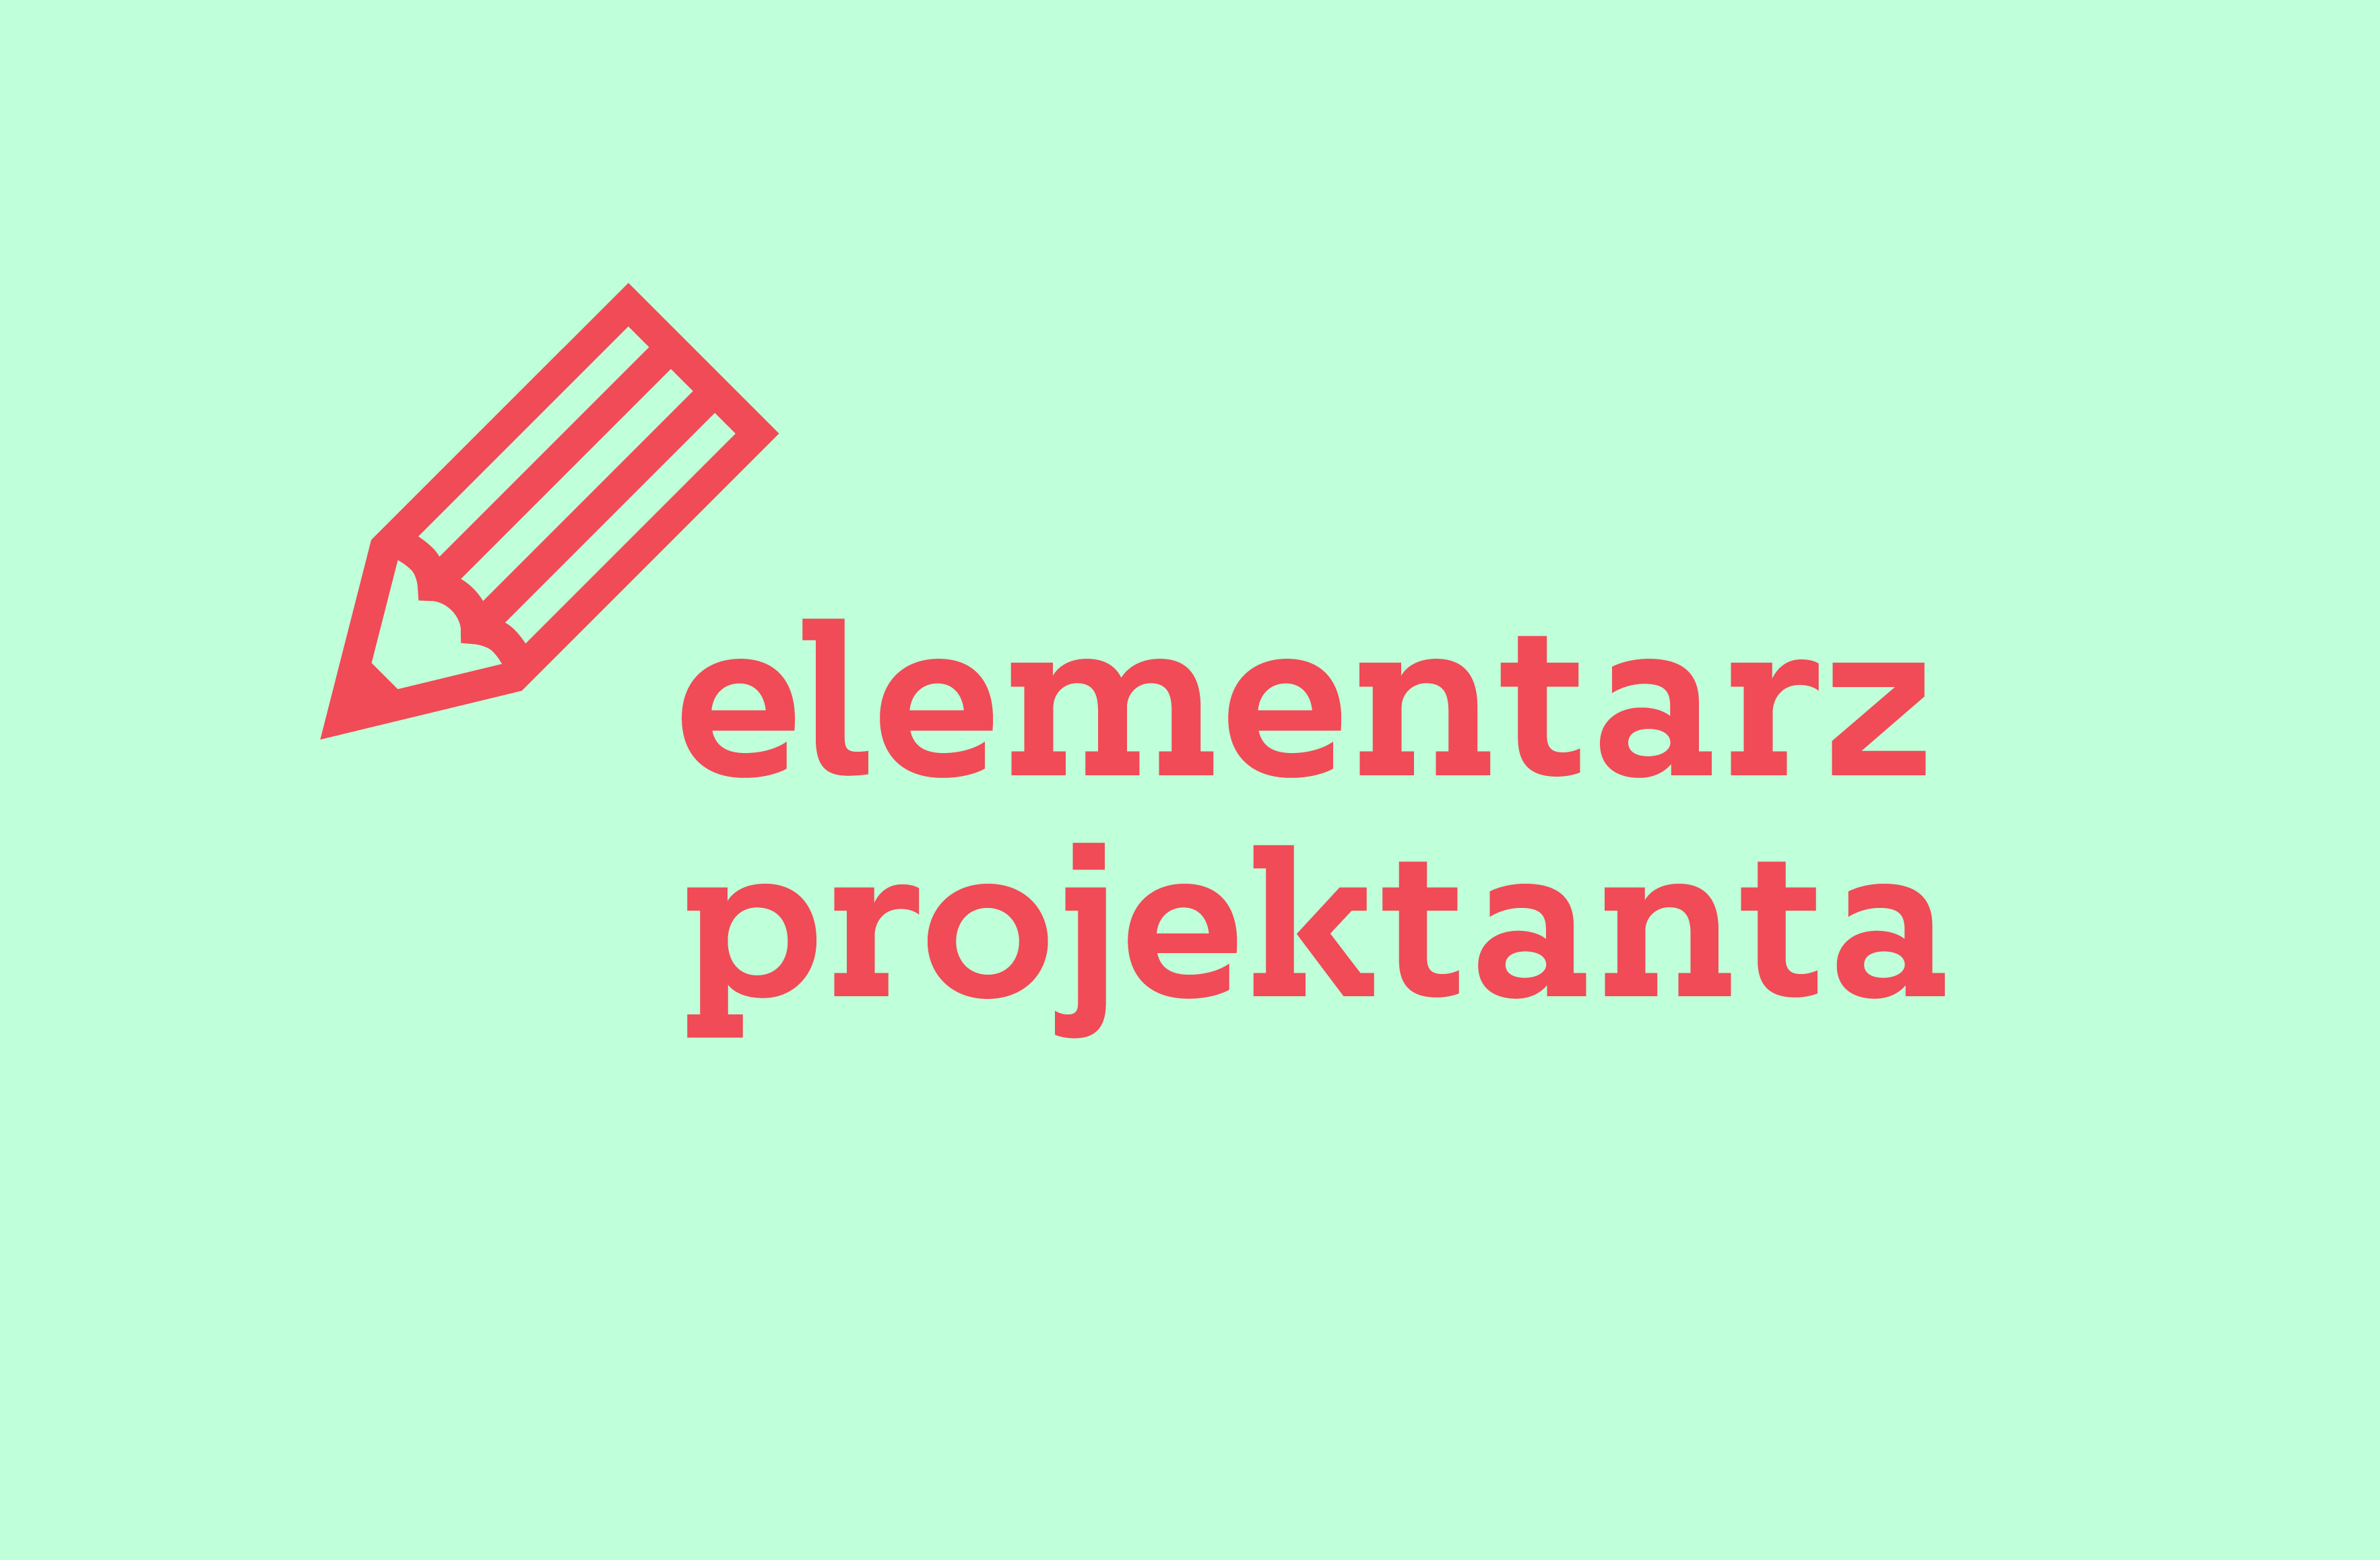 w Poznaniu odbędzie się Elementarz Projektanta - konferencja poświęcona przedsiębiorczości projektantów graficznych.